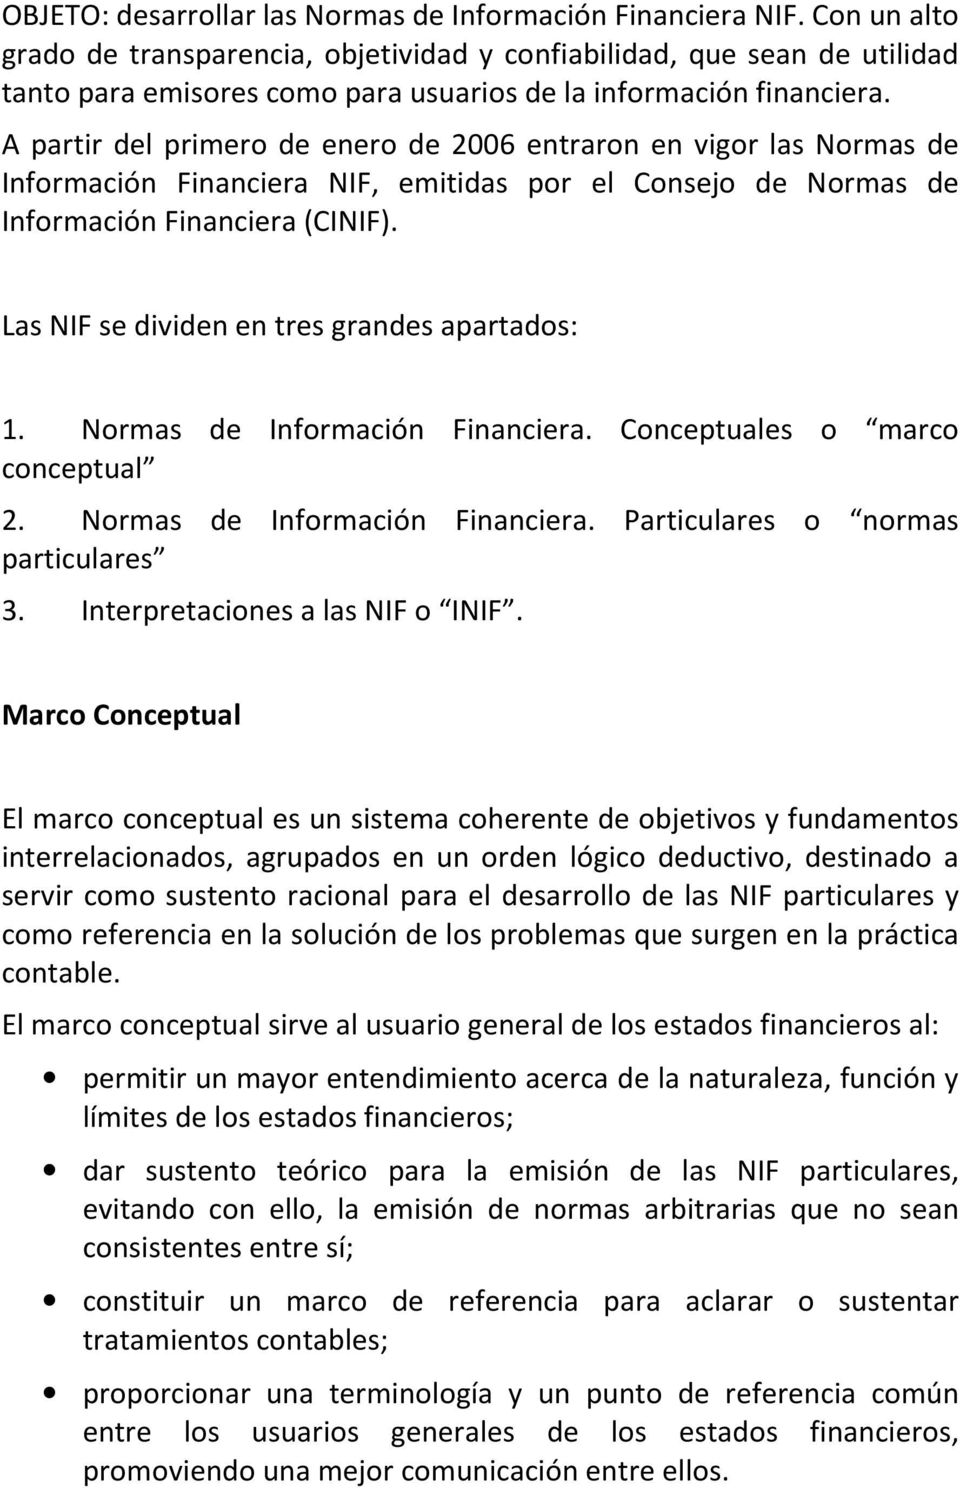 A partir del primero de enero de 2006 entraron en vigor las Normas de Información Financiera NIF, emitidas por el Consejo de Normas de Información Financiera (CINIF).